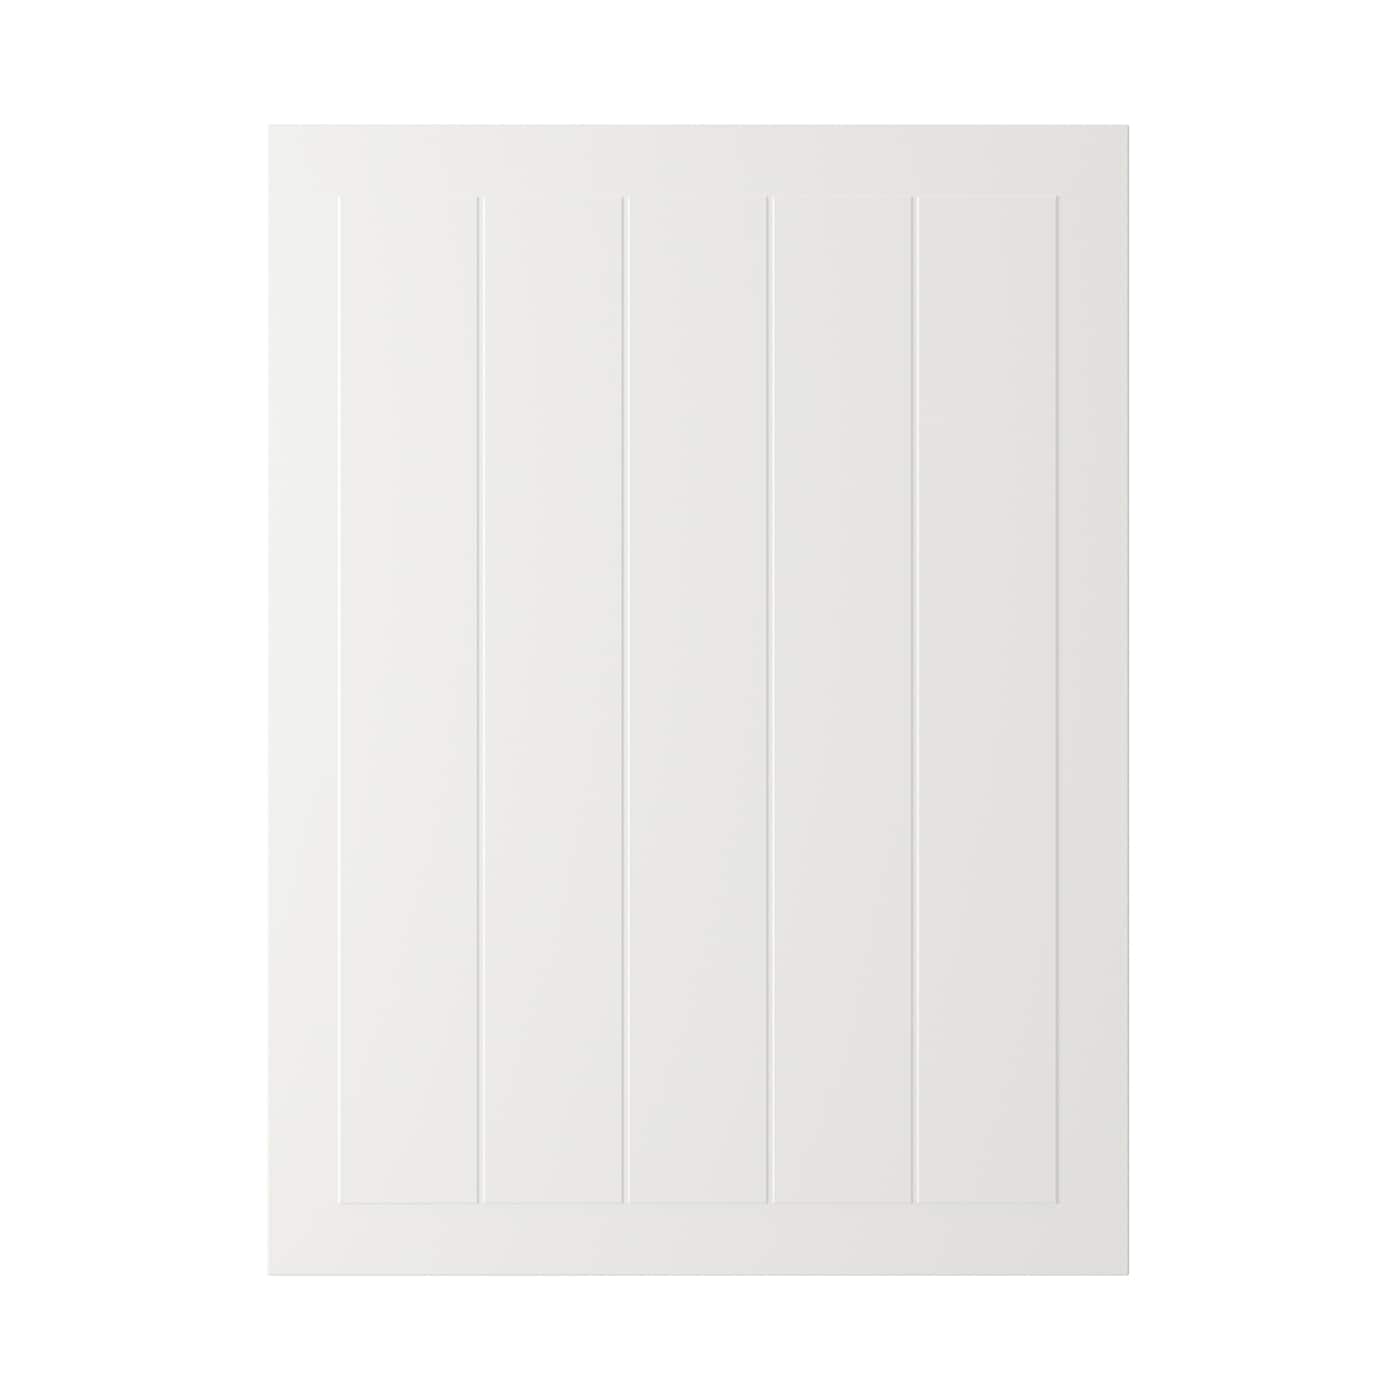 Дверца - IKEA STENSUND, 80х60 см, белый, СТЕНСУНД ИКЕА